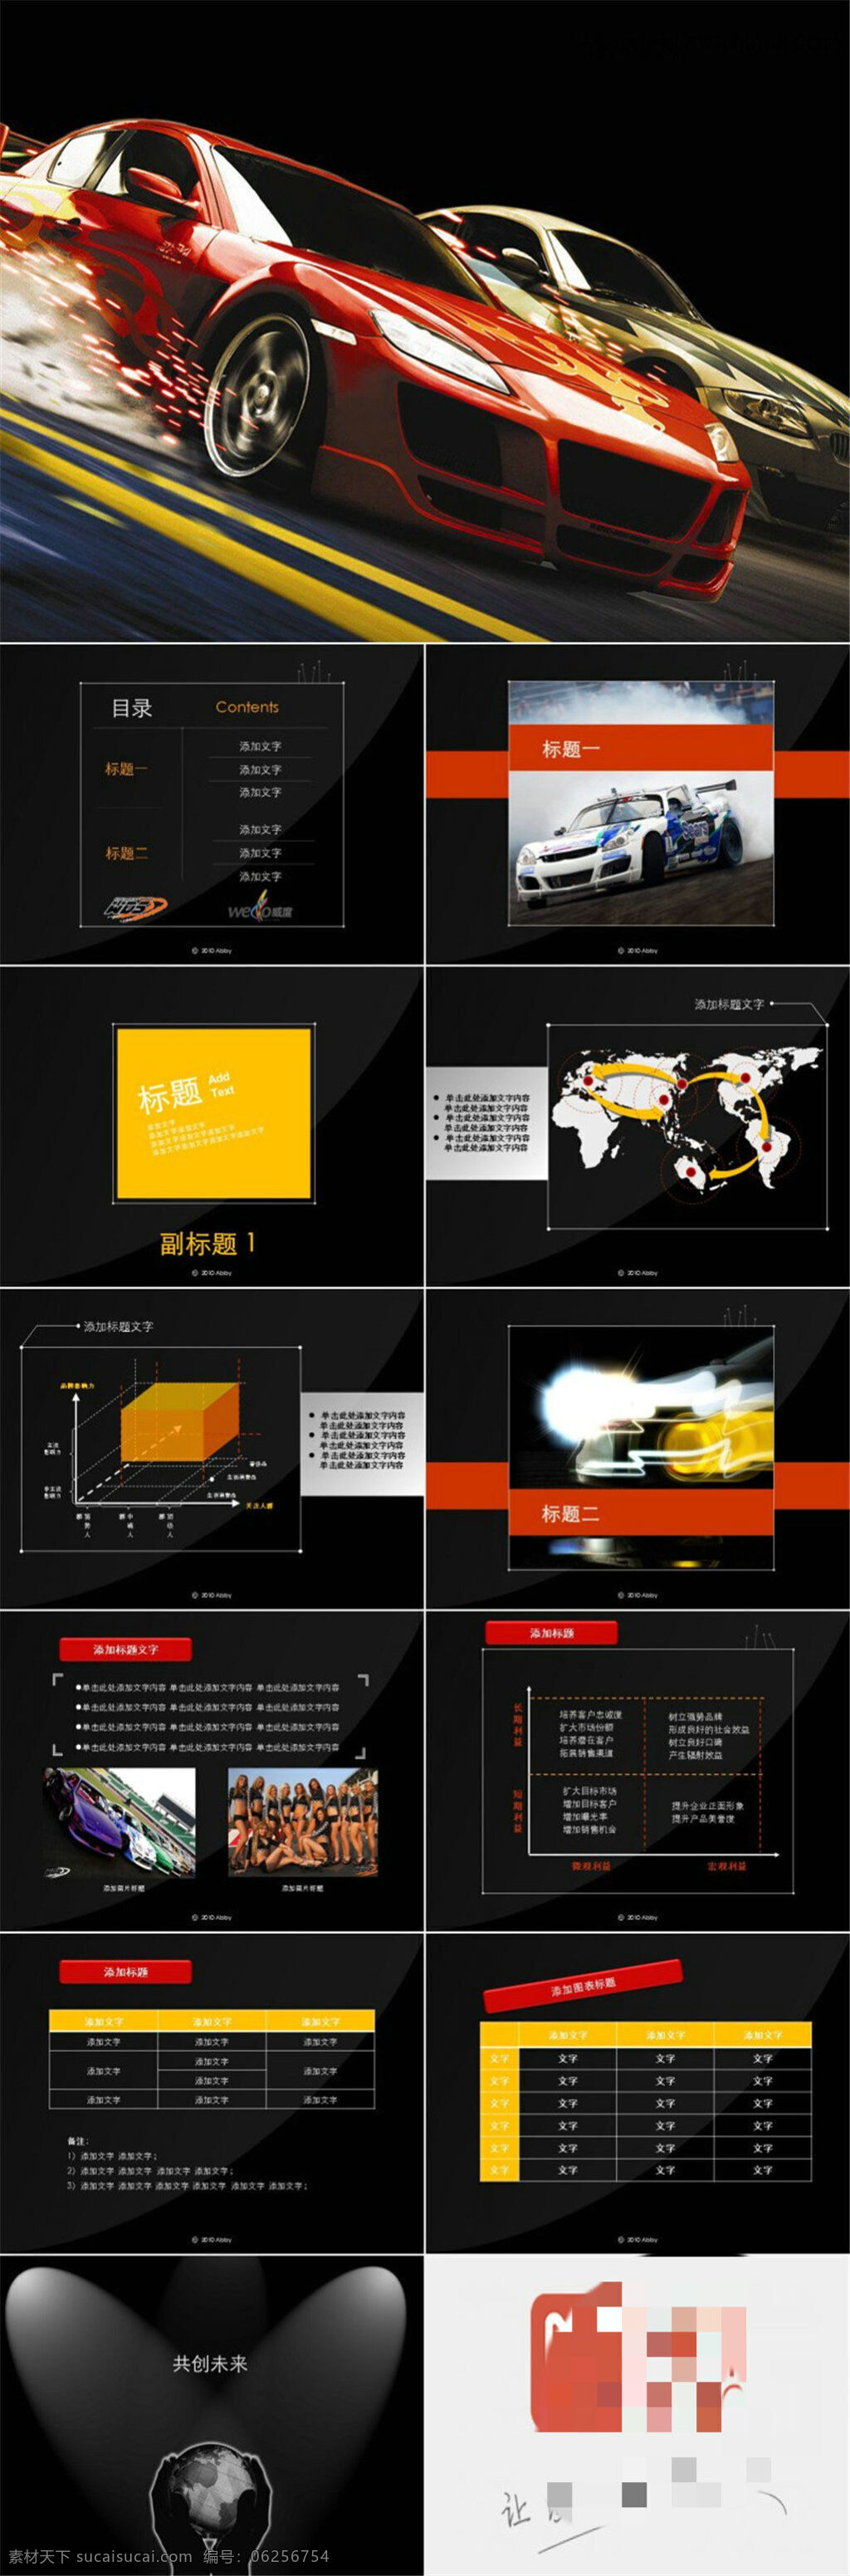 黑色 超酷 炫 跑车 俱乐部 介绍 动感 动态 模板 图表 制作 多媒体 创意